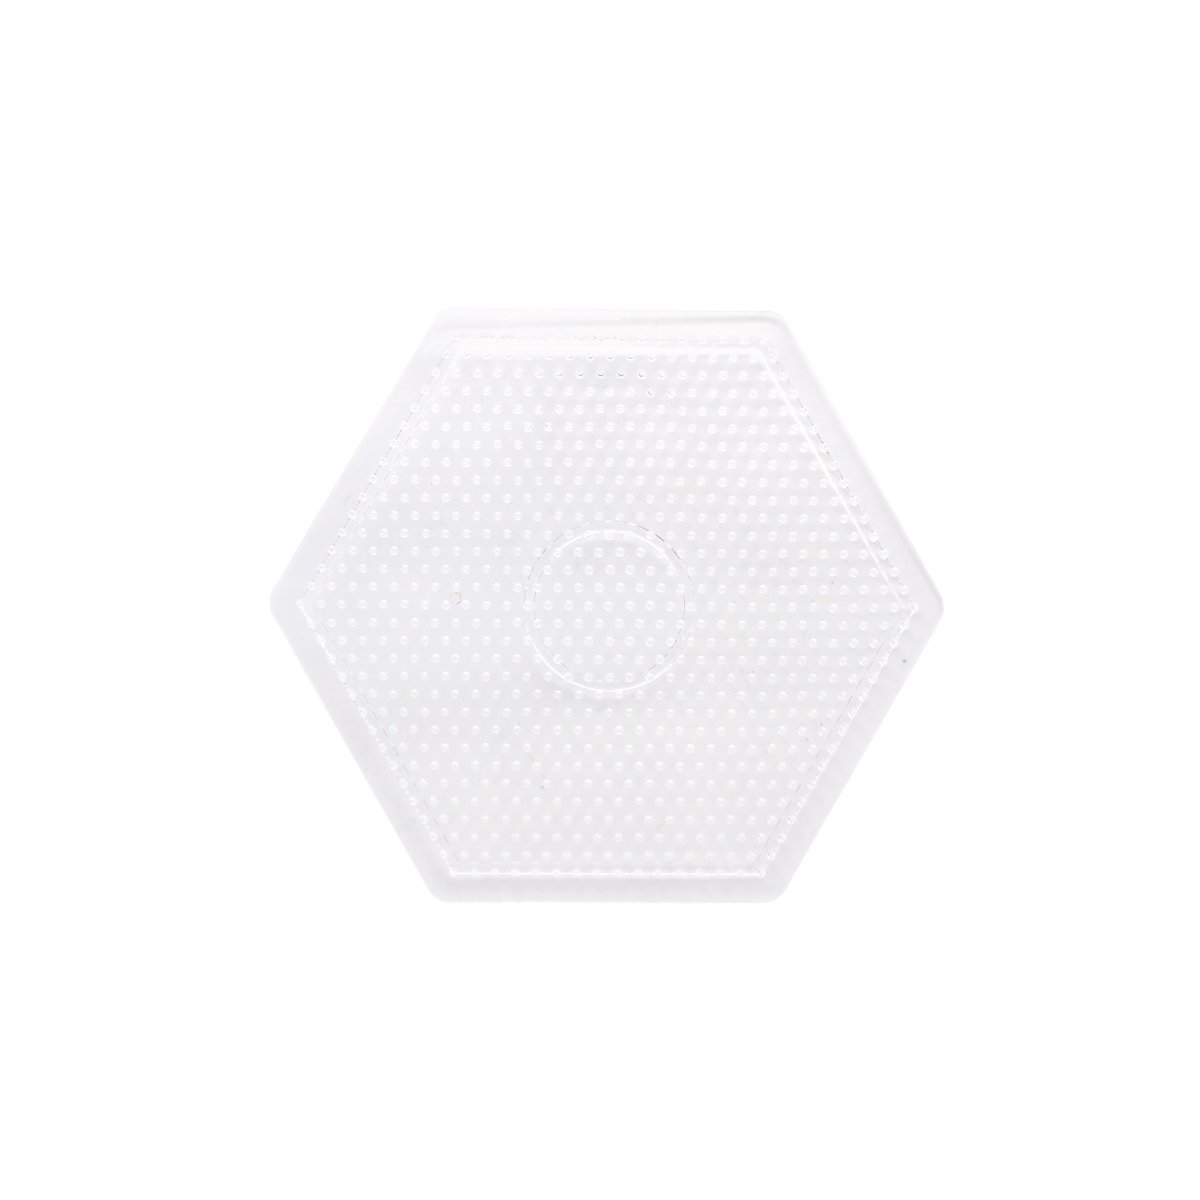 Plaque hexagonale support pour perles à repasser Créalia - Transparente